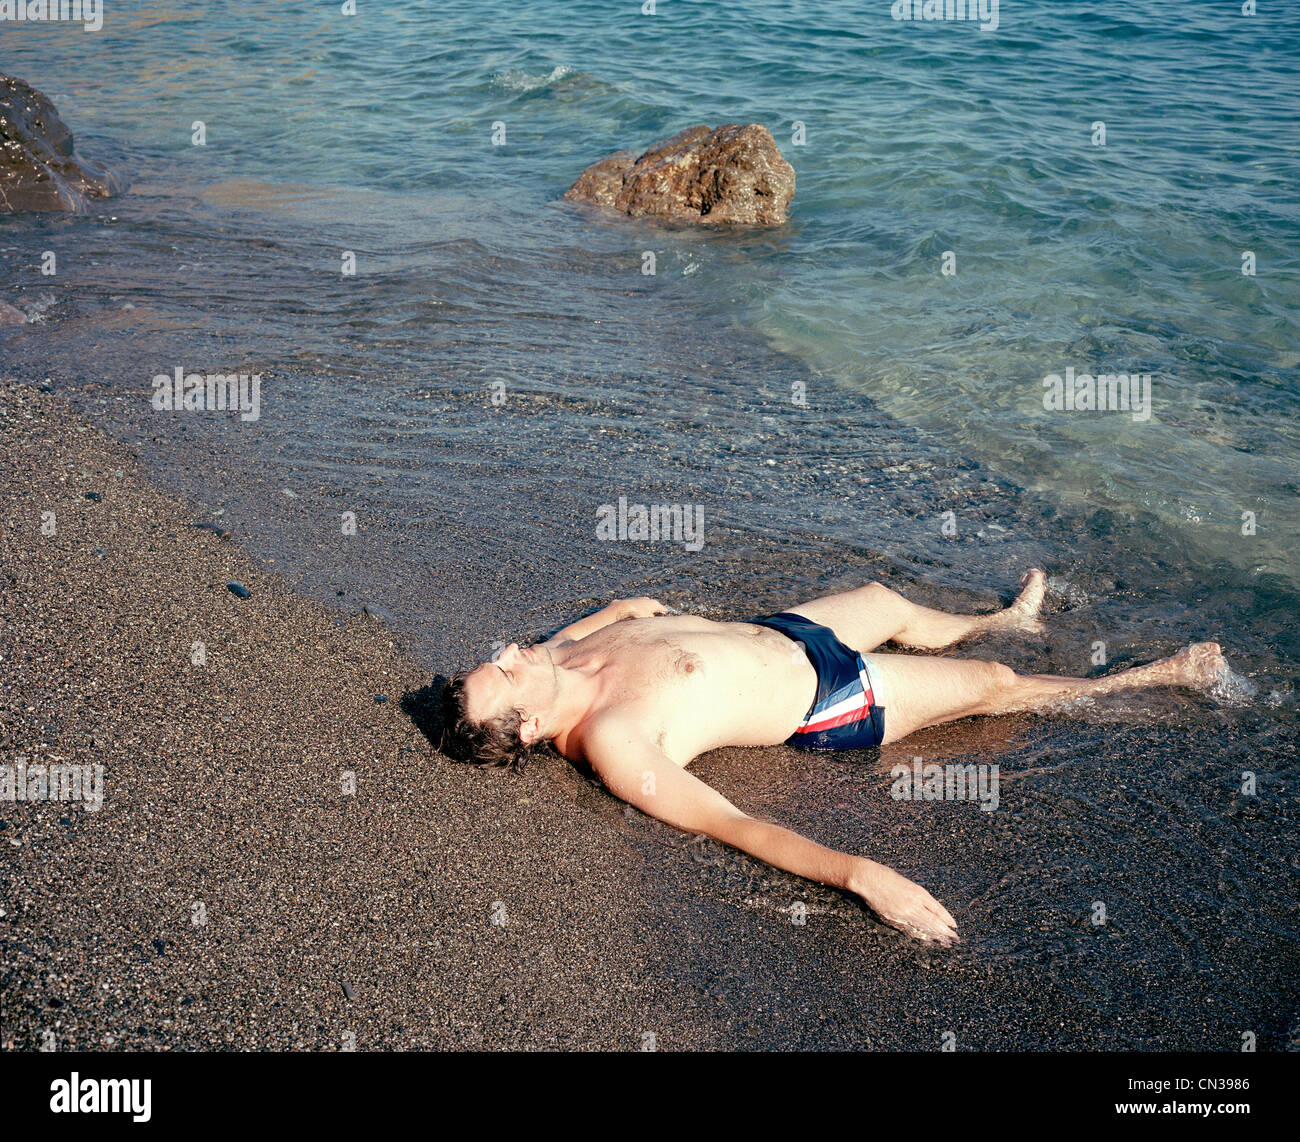 Uomo disteso a bordo d'acqua, Creta, Grecia Foto Stock